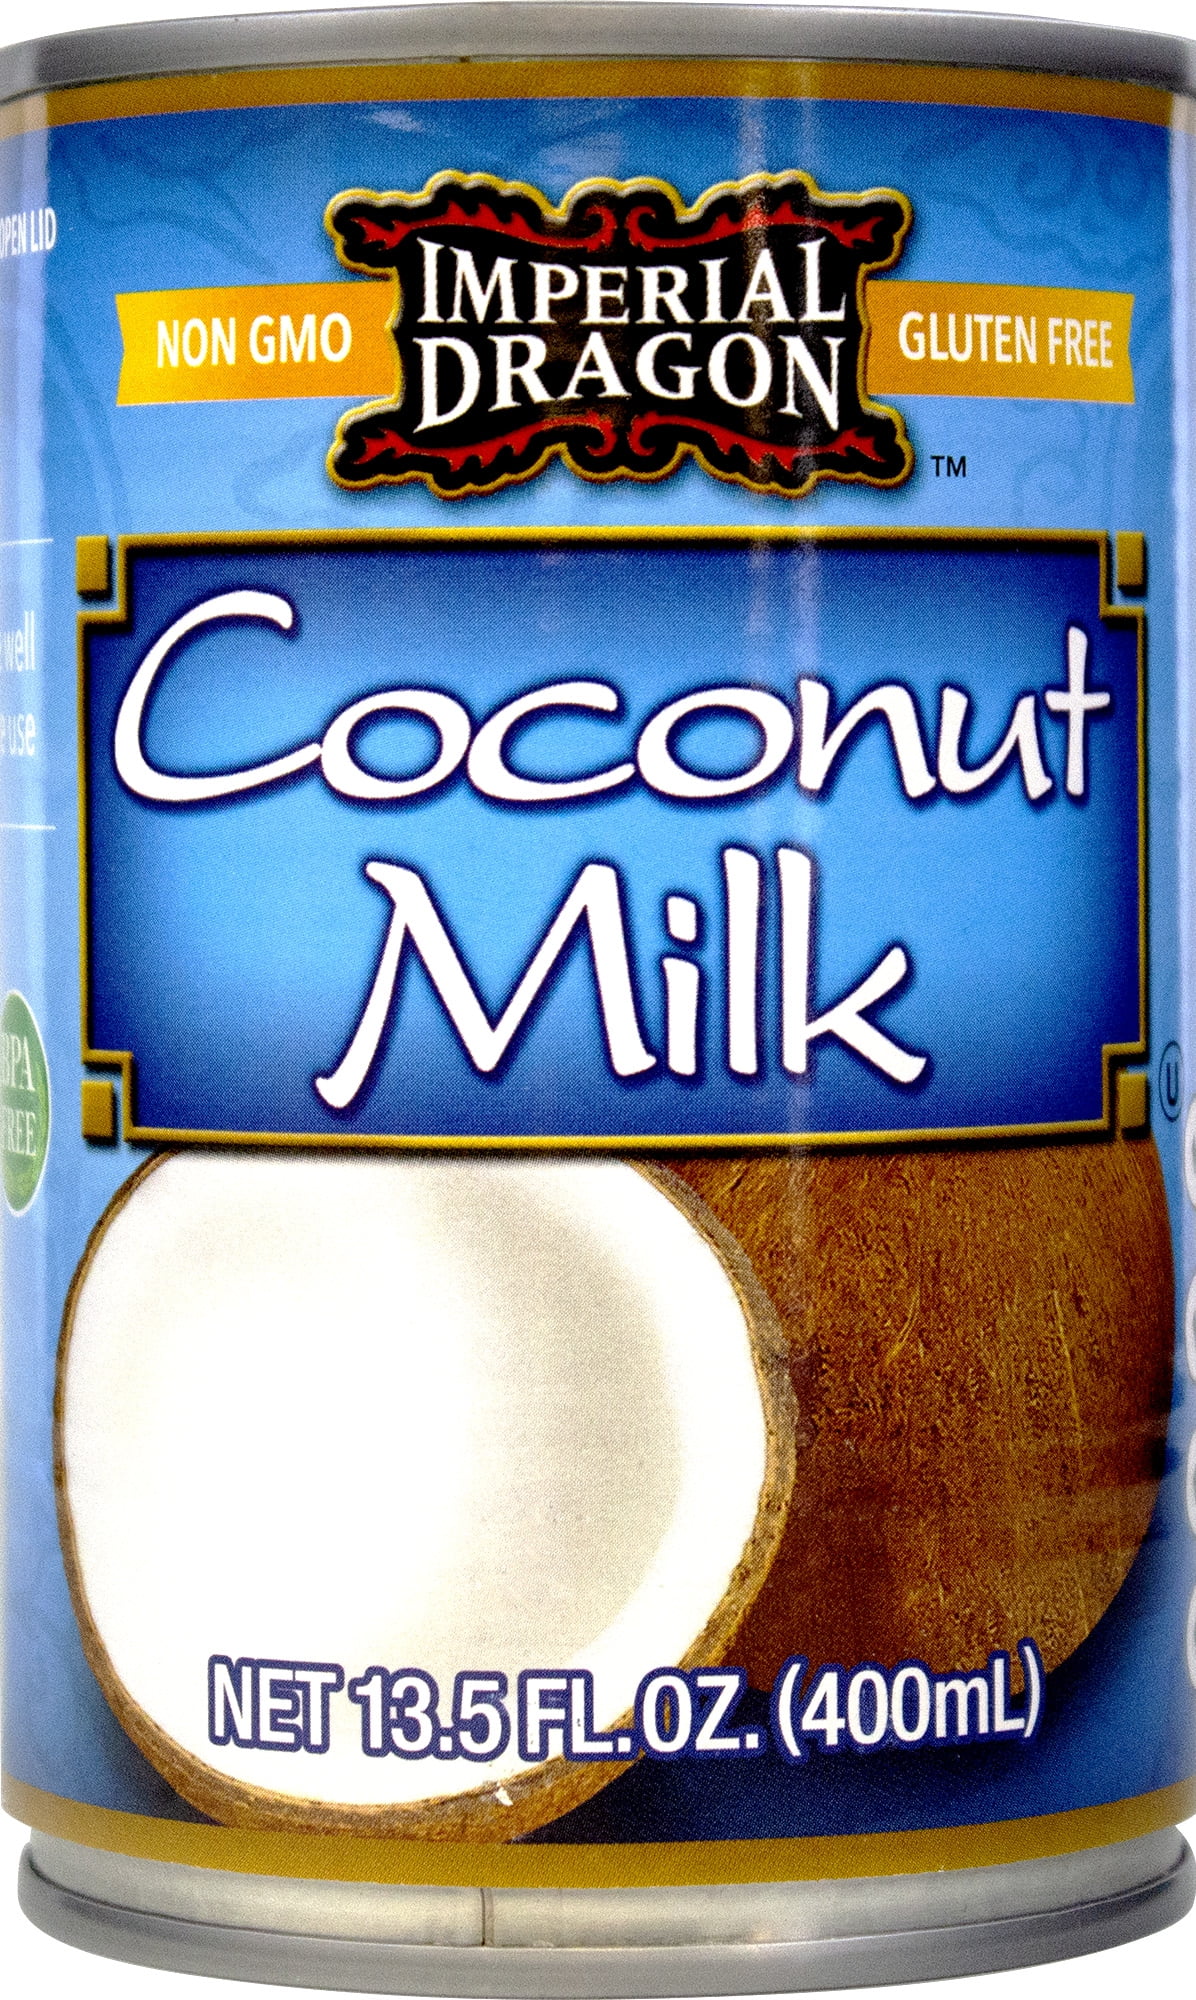 Imperial Dragon Coconut Milk, Canned, Non GMO, Gluten-Free, Dairy-Free,  13.5 fl oz 